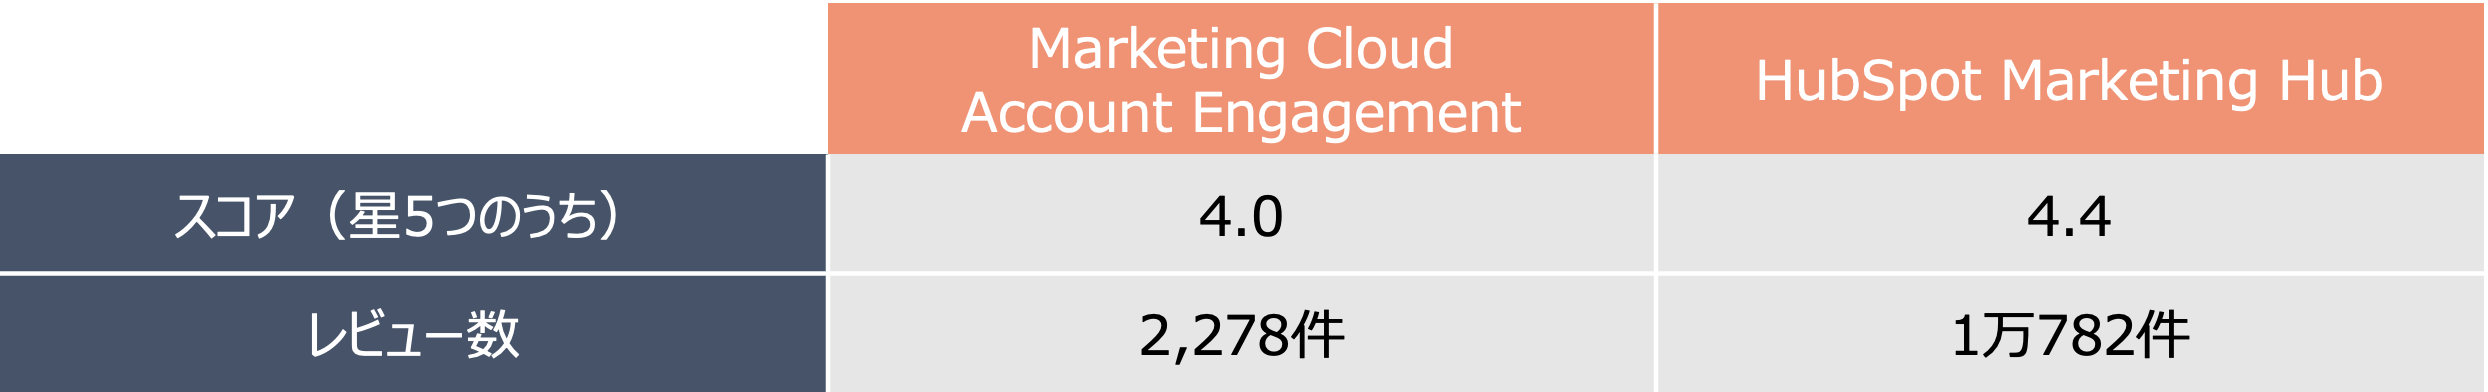 Marketing Hub Account Engagement スコア比較